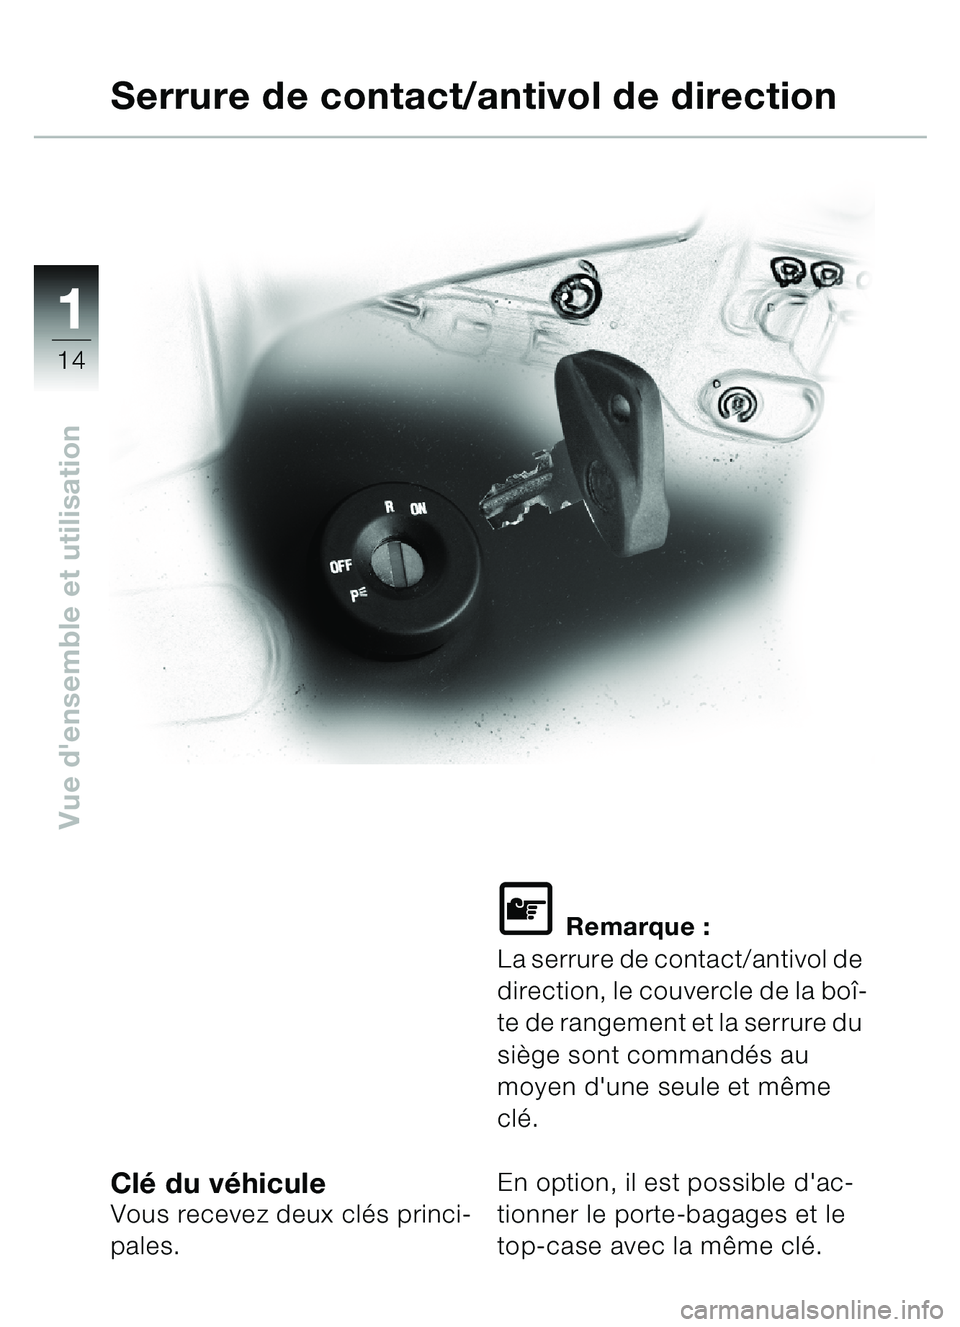 BMW MOTORRAD C1 2000  Livret de bord (in French) 11
14
Vue densemble et utilisation
Clé du v éhiculeVous recevez deux cl és princi-
pales.
\f Remarque :
La serrure de contact/antivol de 
direction, le couvercle de la bo î-
te de rangement et la